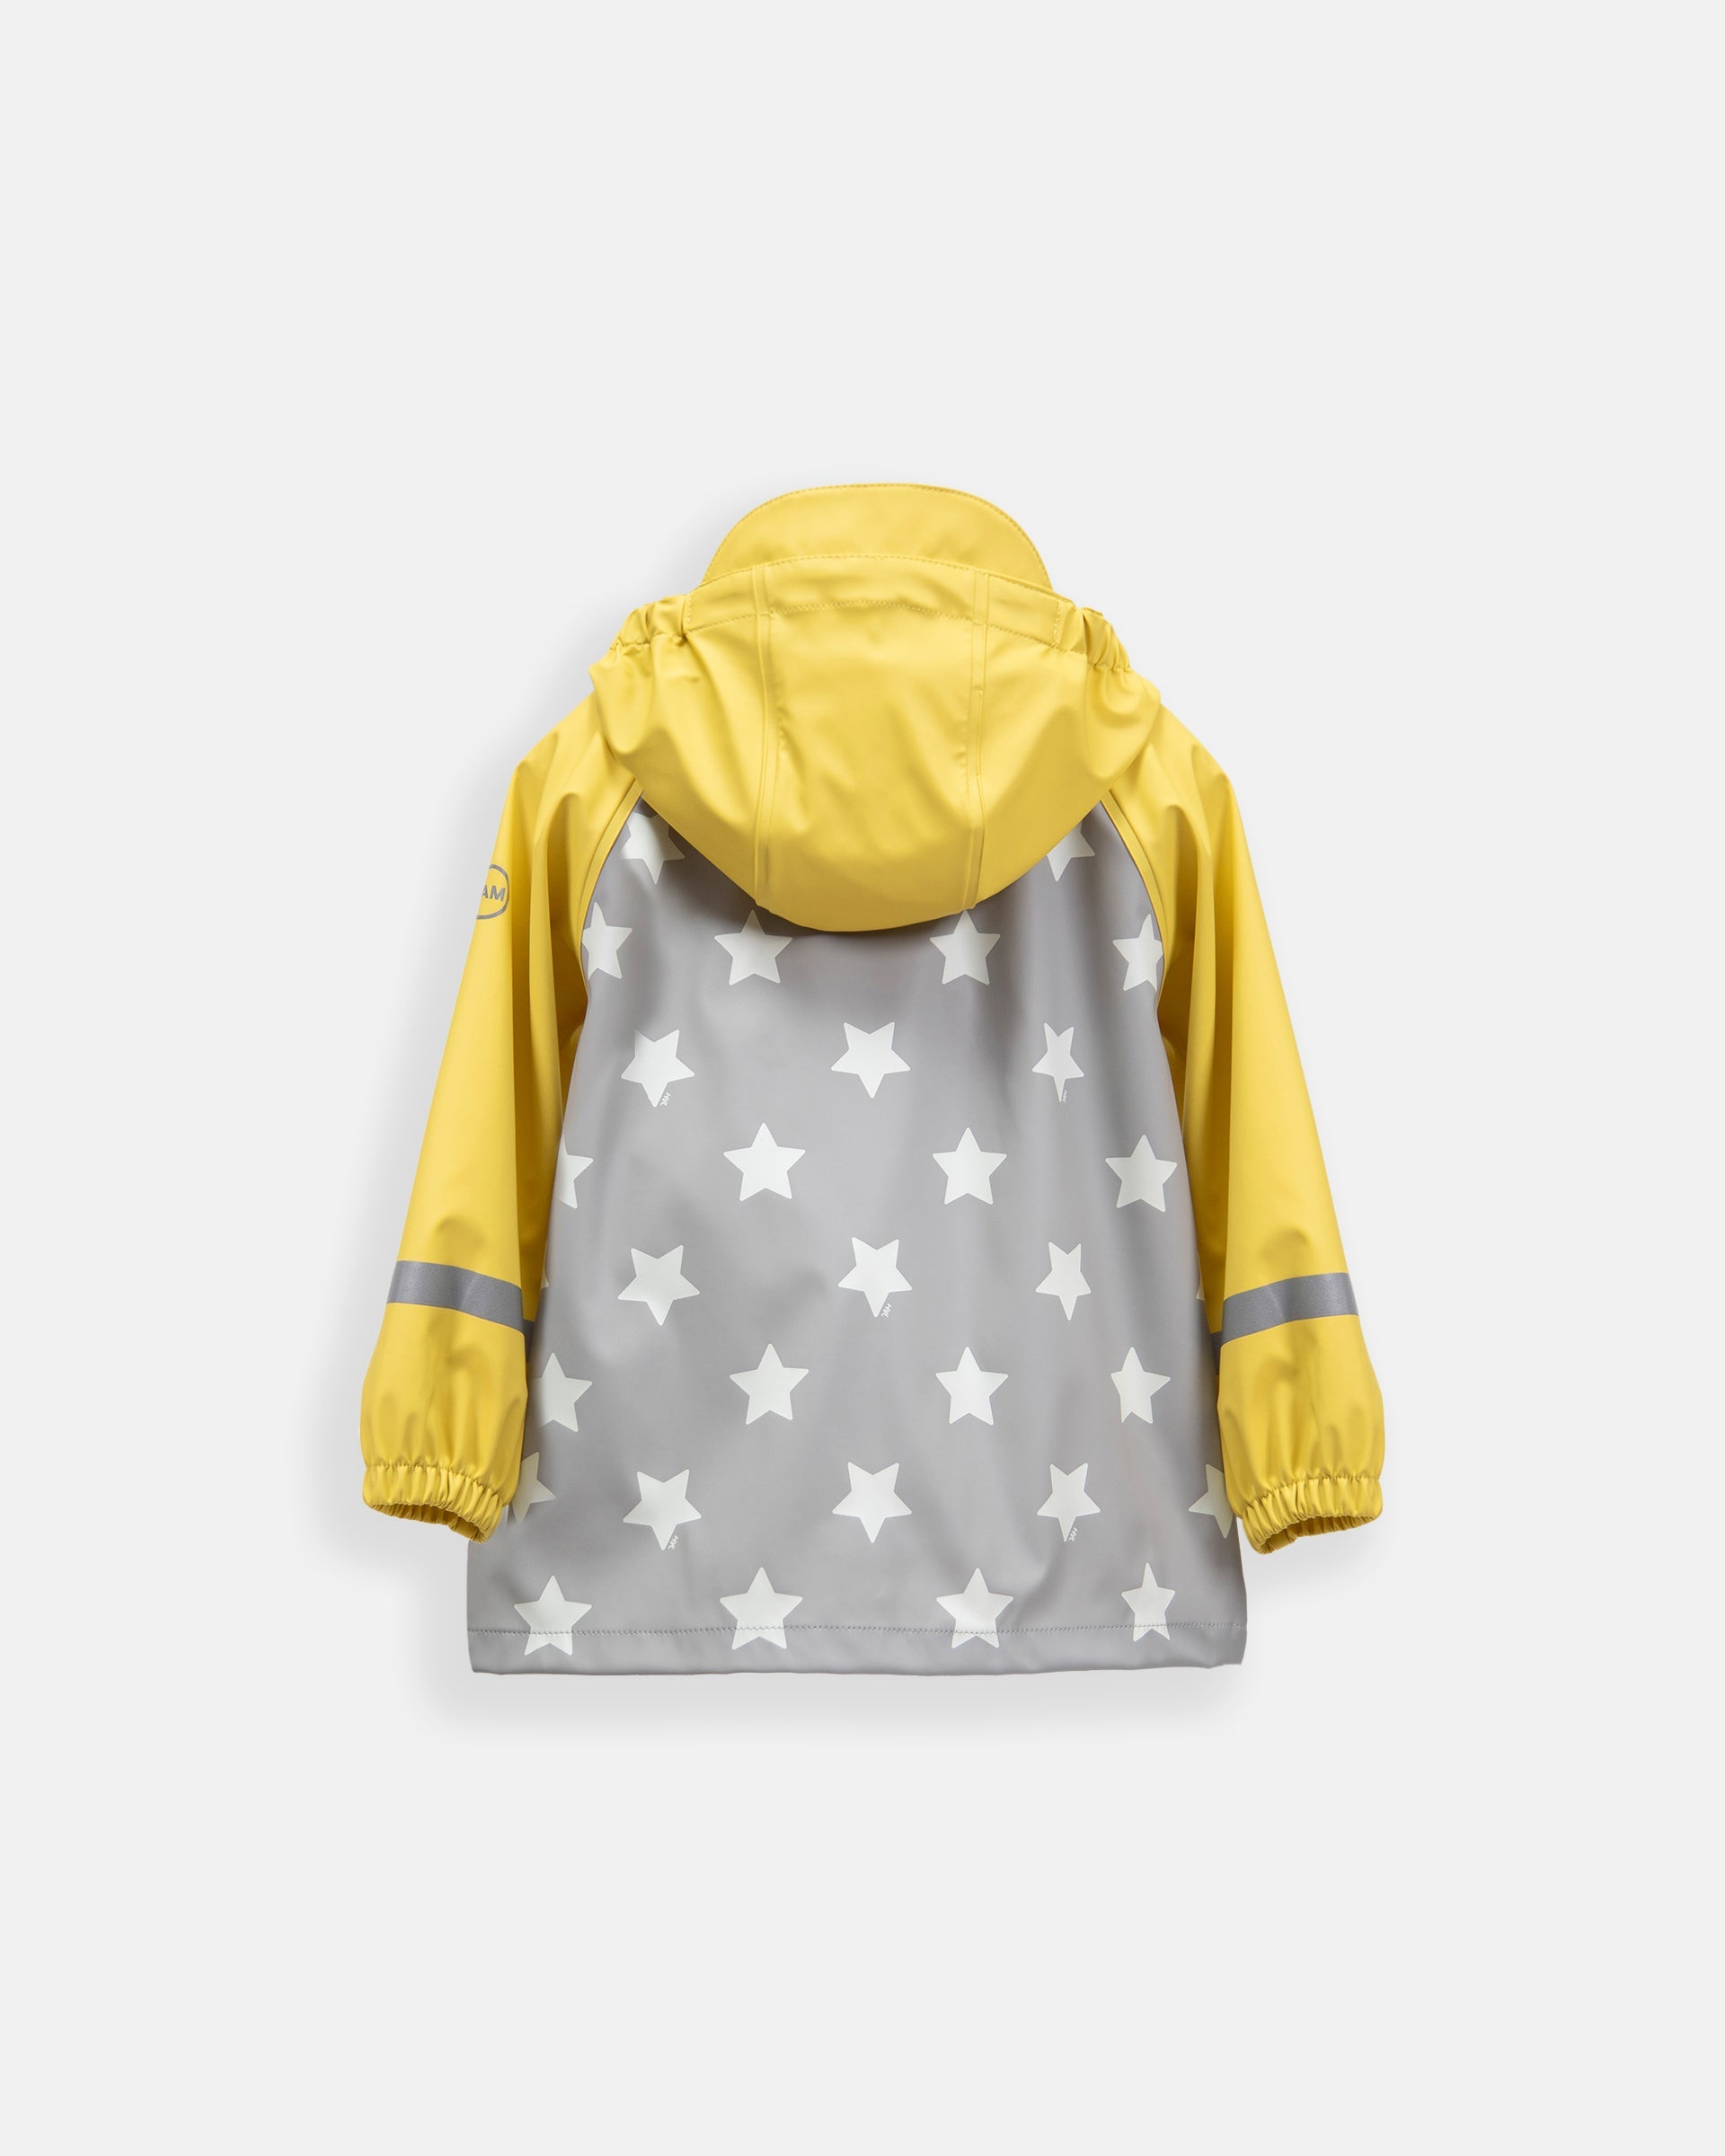 Rainy Stars Yellow//